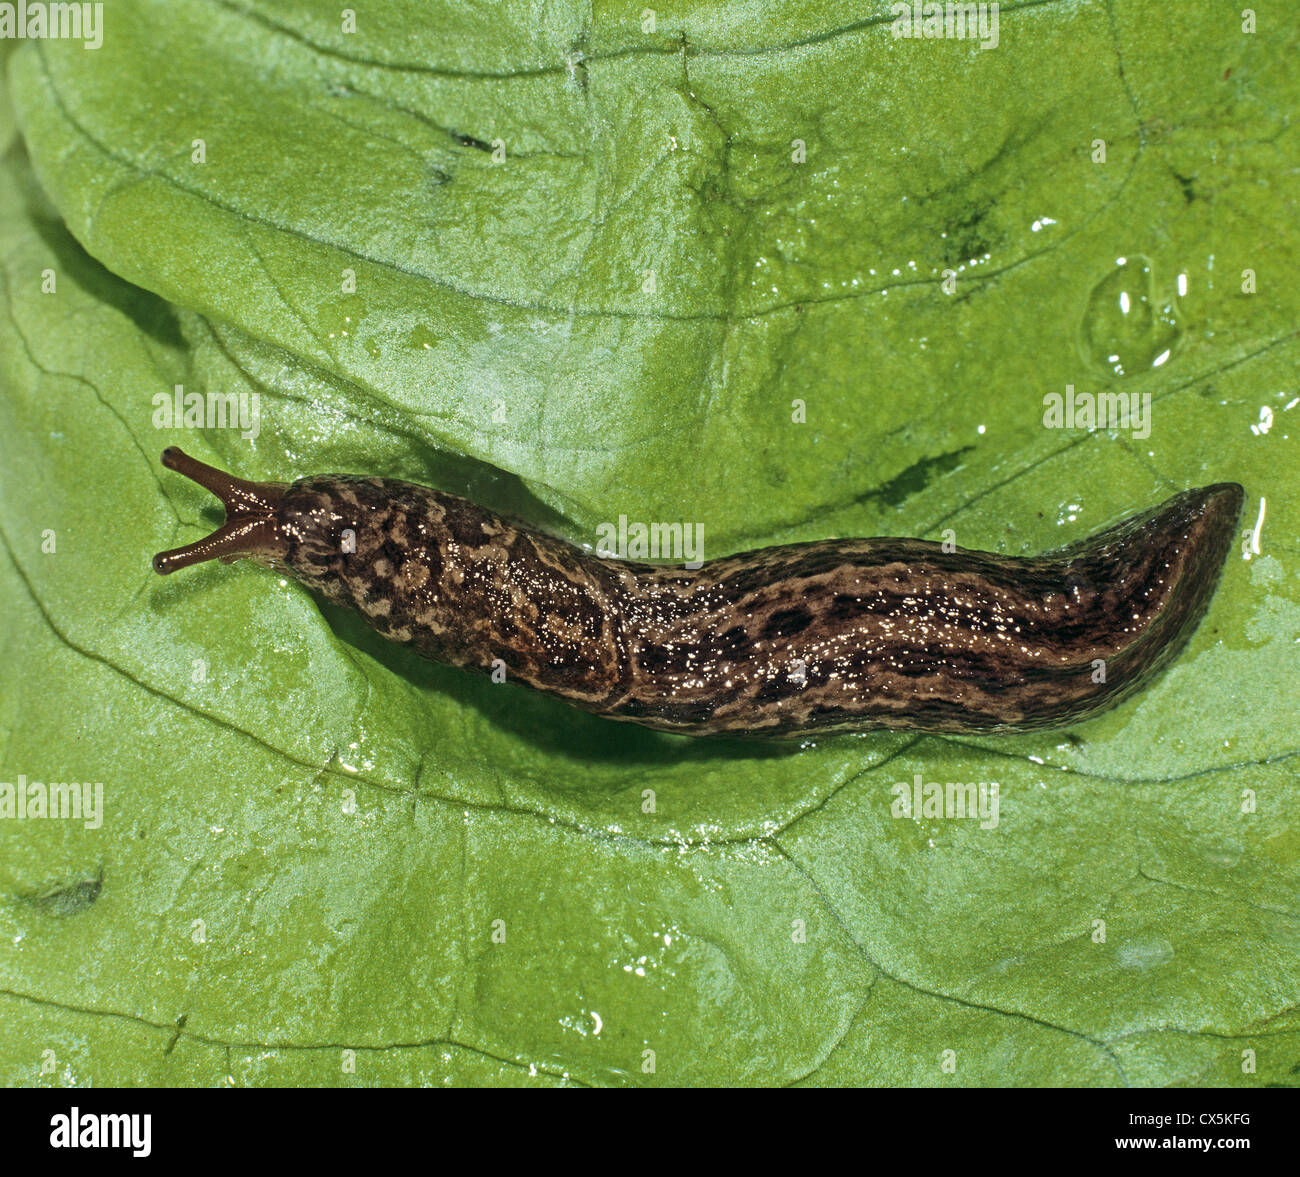 Keelback Slug (Limax tenellus) on a lettuce leaf Stock Photo